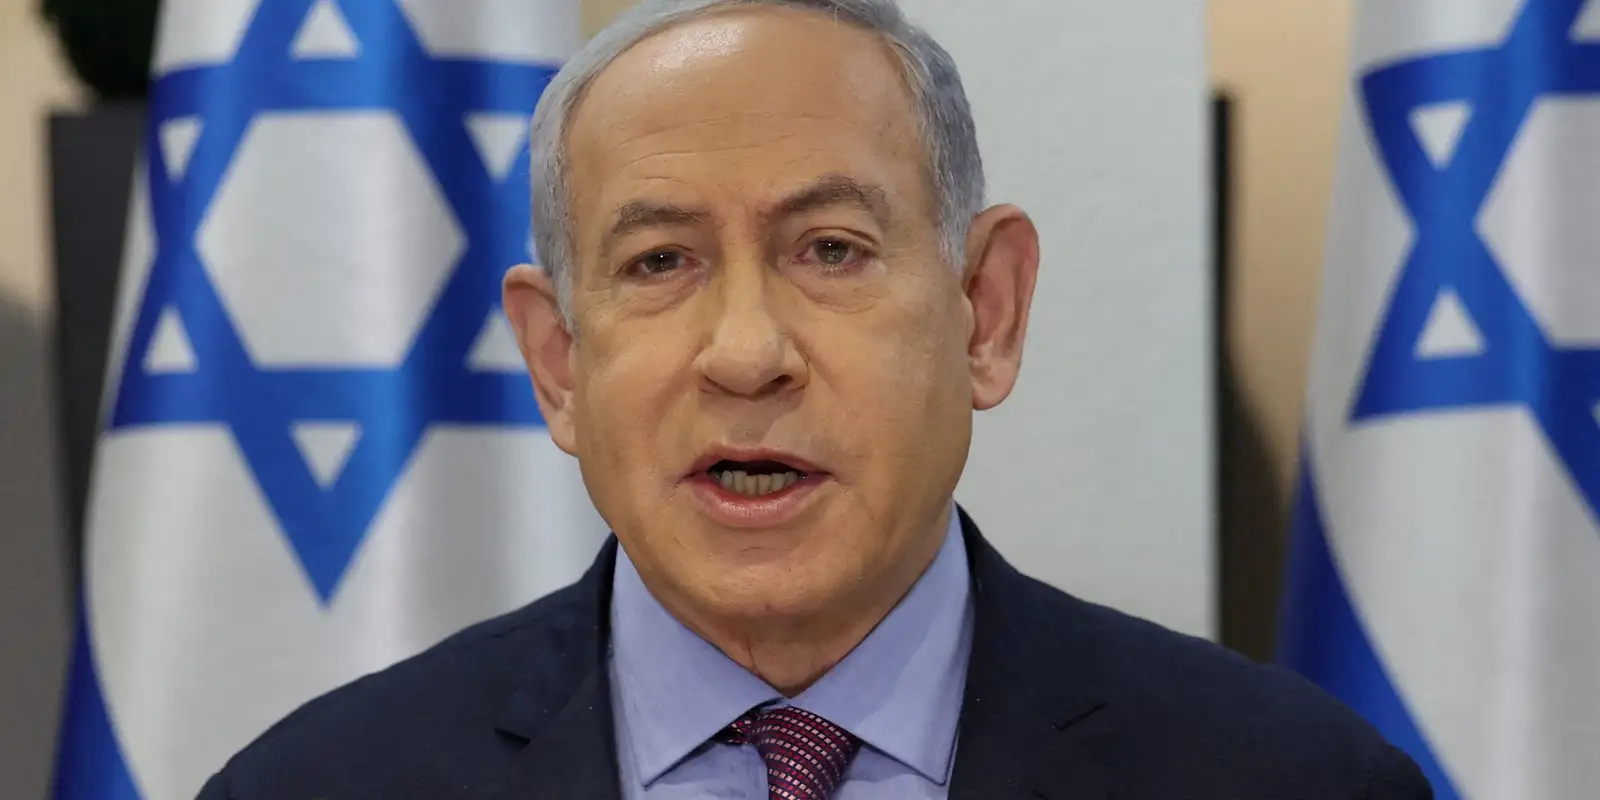 Ataque a acampamento em Rafah foi "acidente terrível", diz Netanyahu